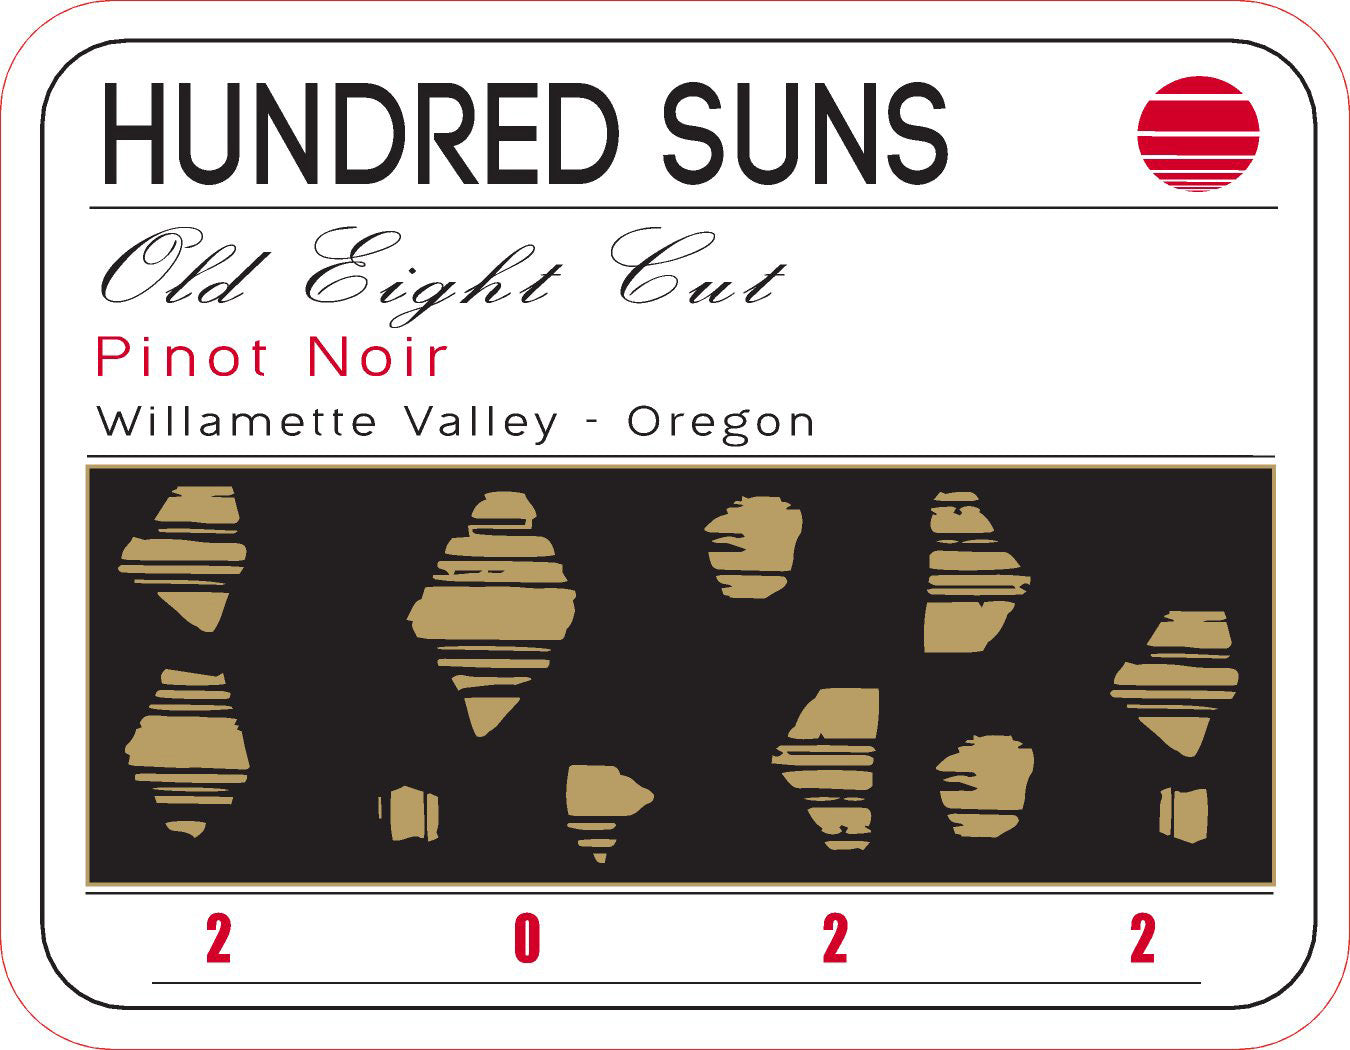 Hundred Suns Old Eight Cut Pinot Noir 2022